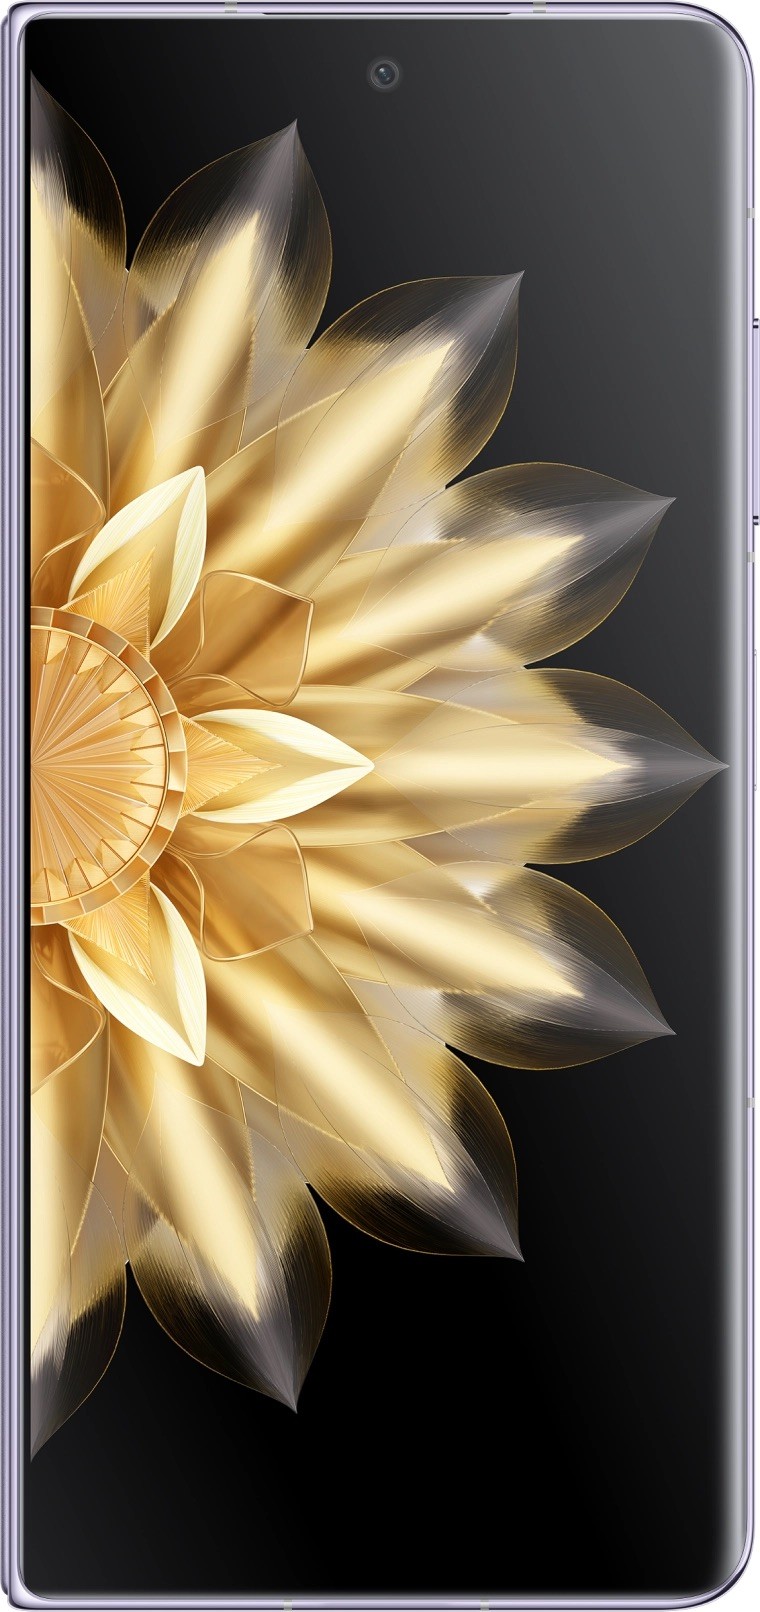 SAMSUNG Galaxy Z Fold 4, teléfono celular Android desbloqueado de fábrica,  256 GB, modo flexible, video manos libres, vista de múltiples ventanas